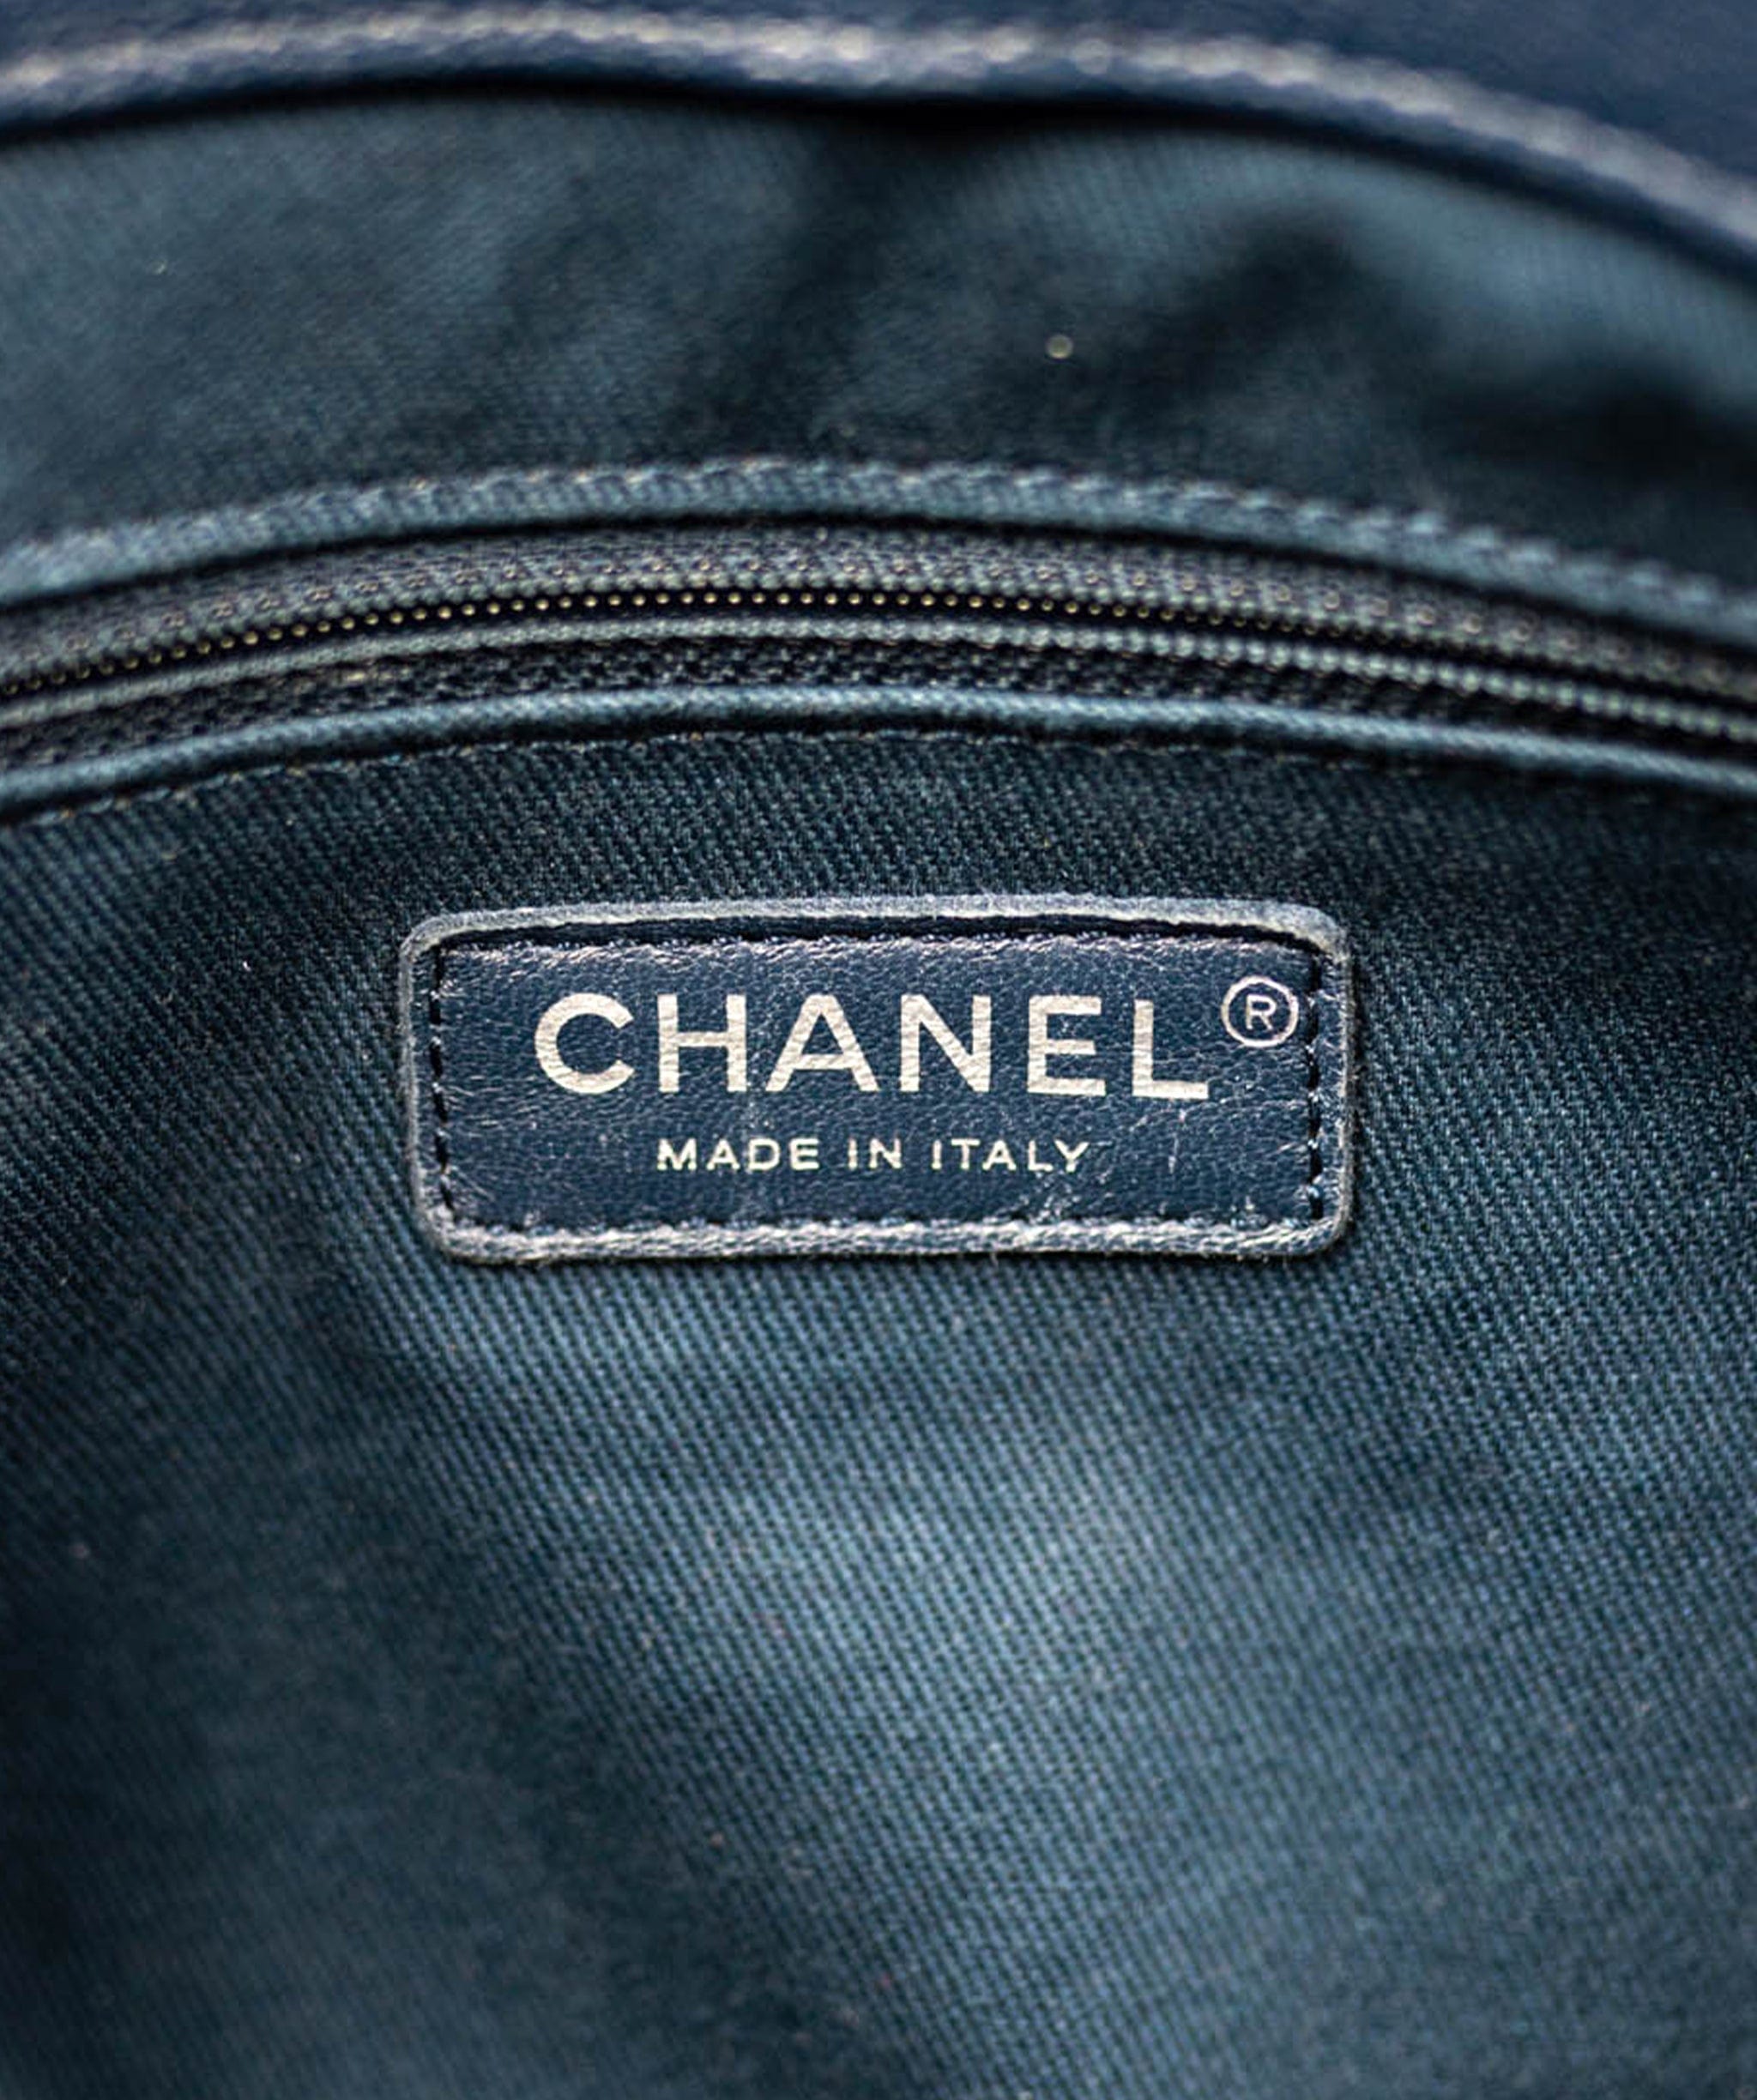 Chanel chanel blue tote ALC0063